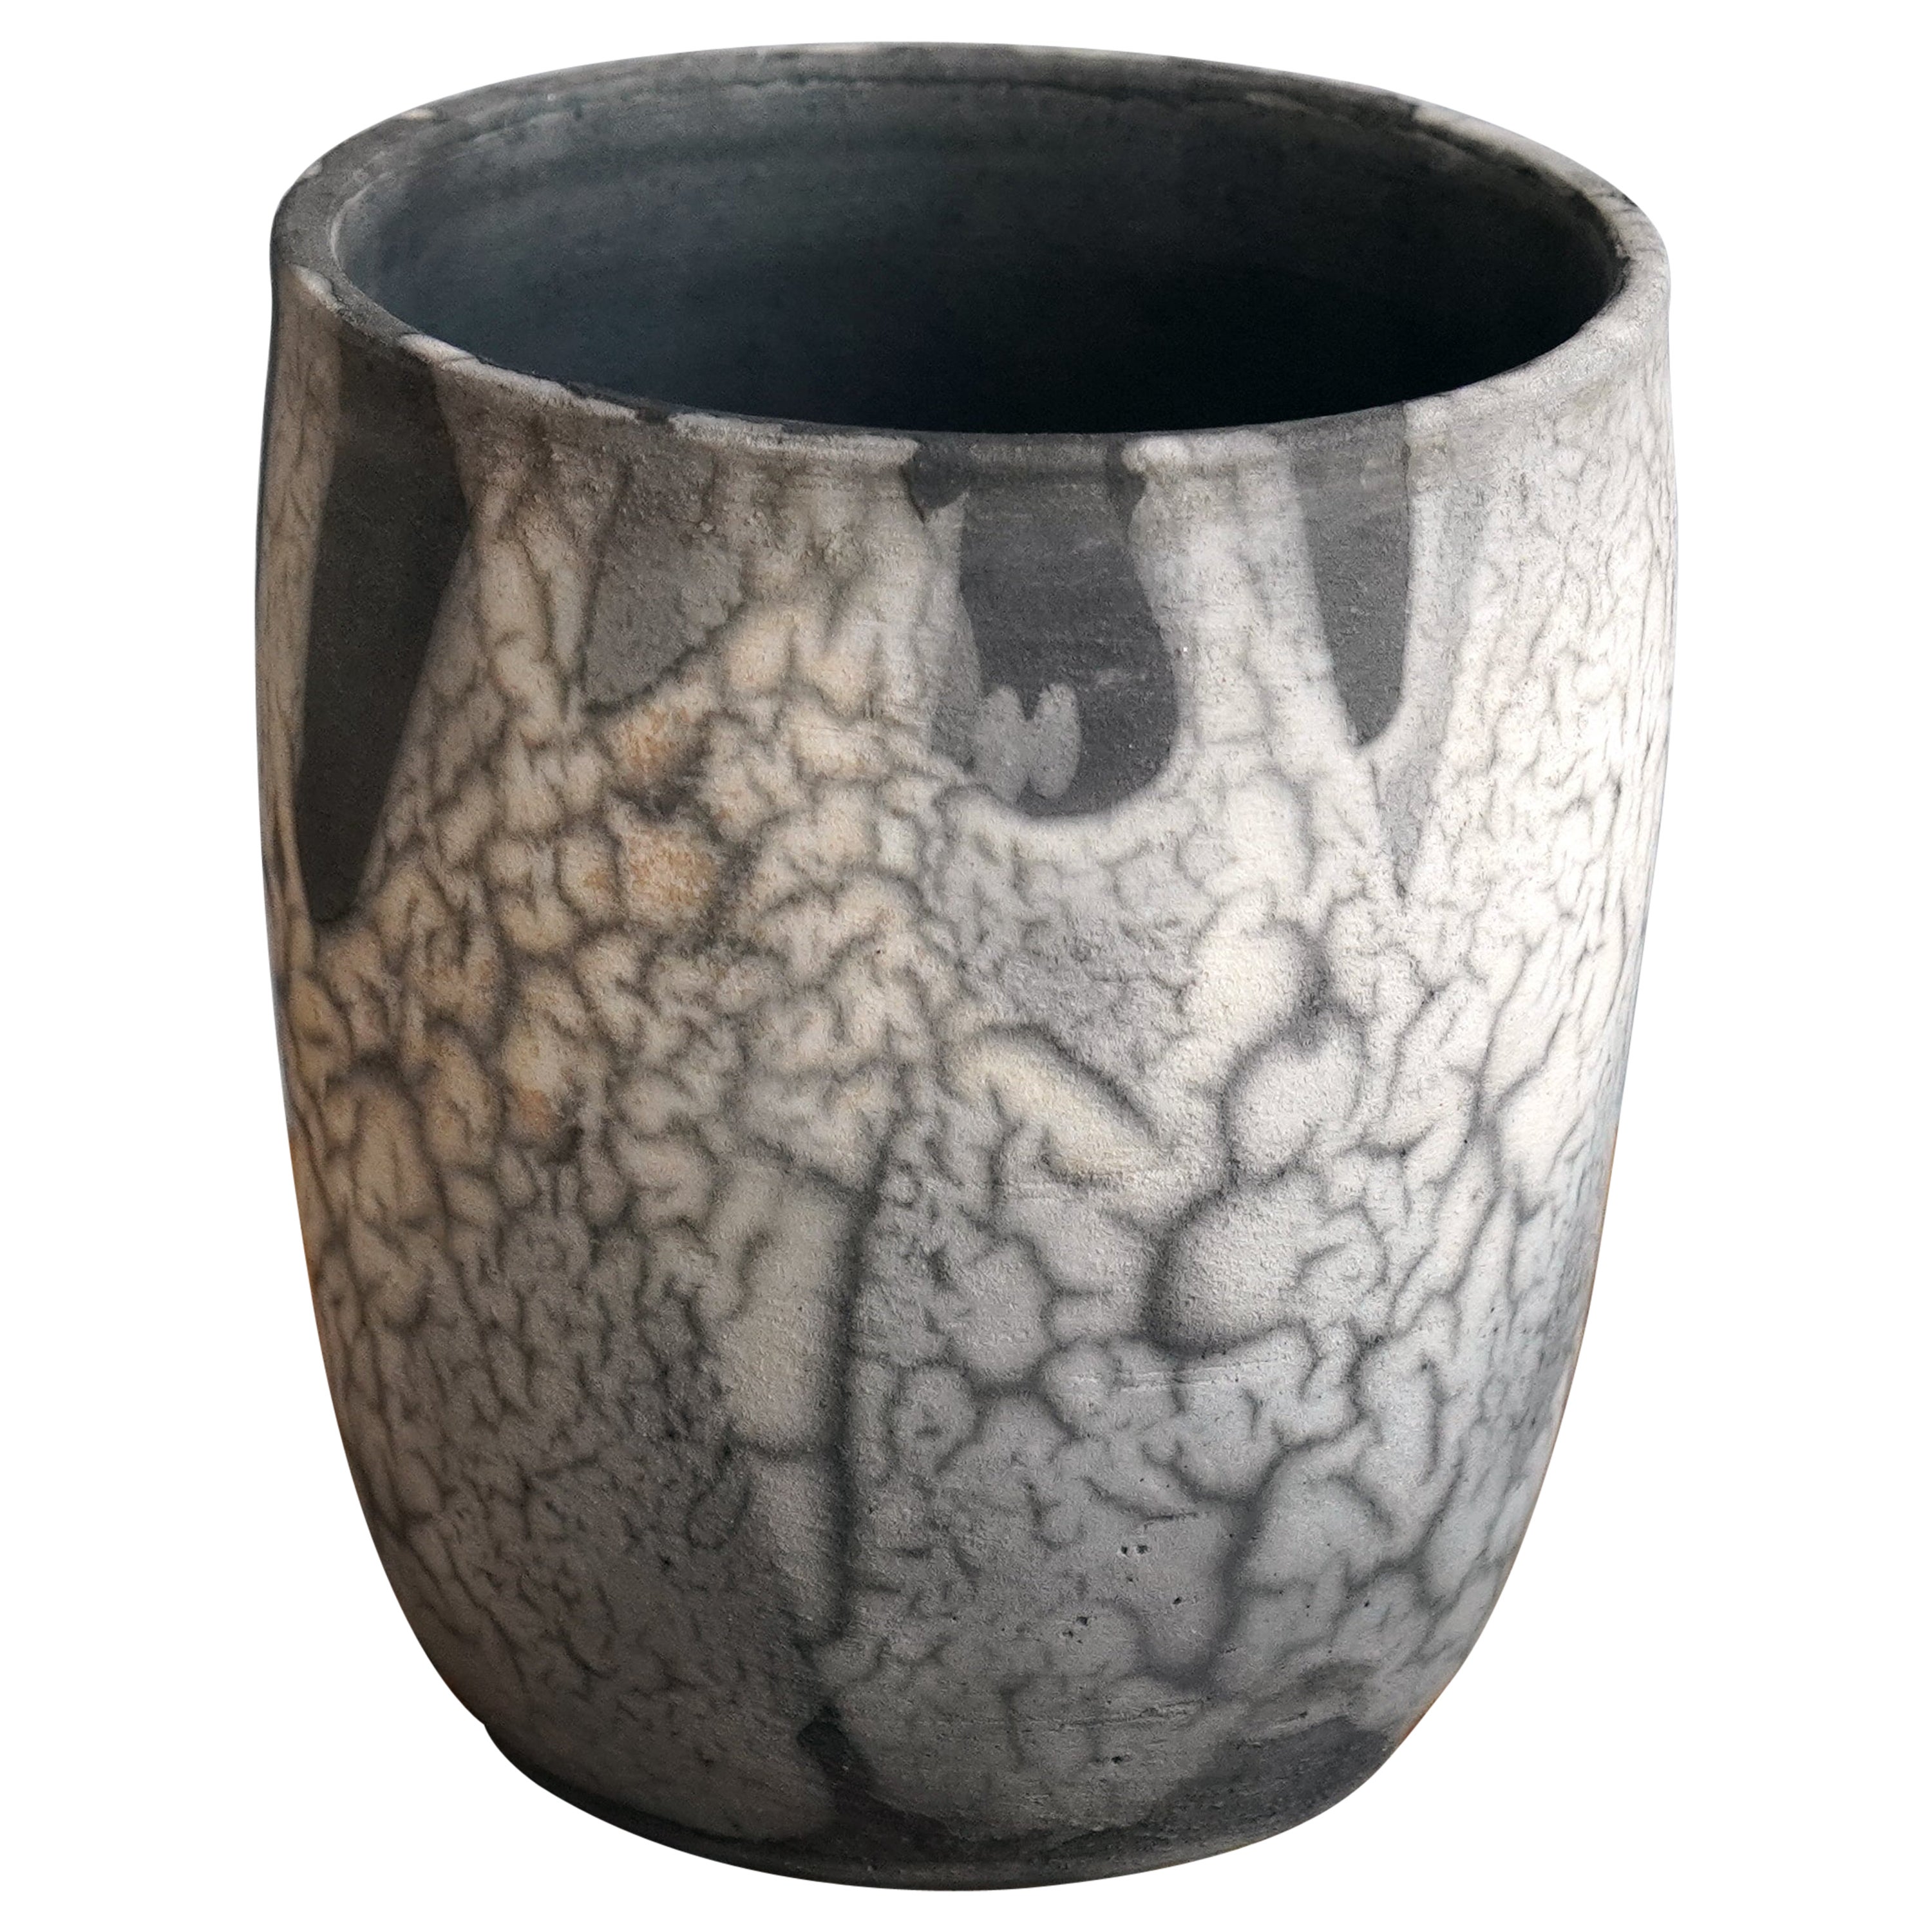 Shinsen Raku Pottery Vase - Smoked Raku - Handmade Ceramic Home Decor Gift